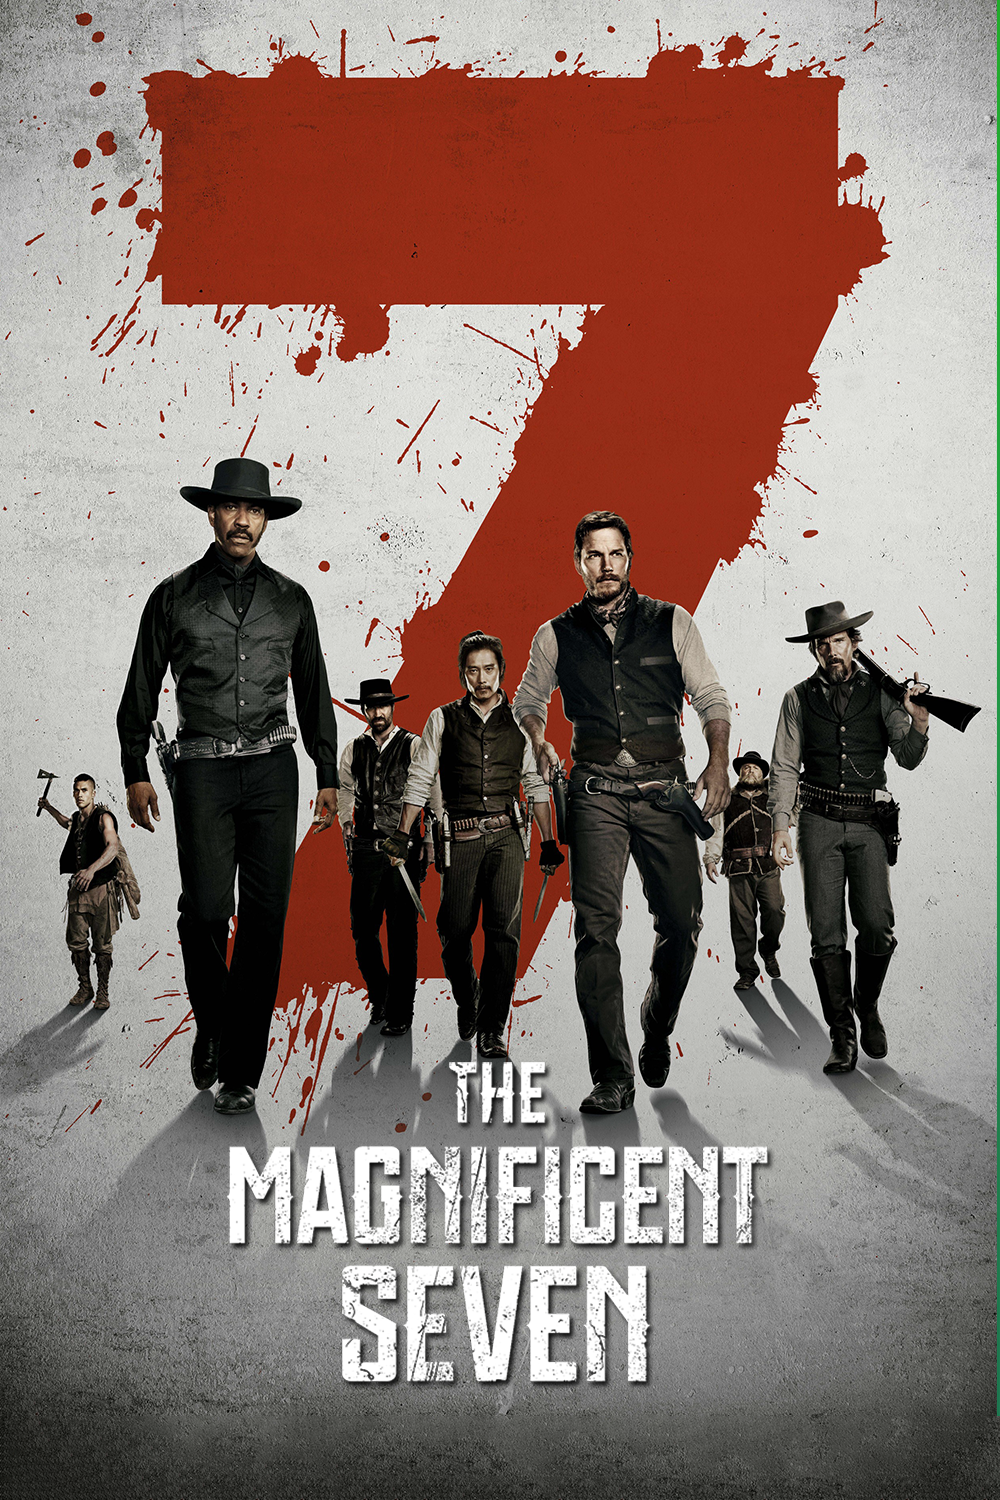 دانلود فیلم The Magnificent Seven 2016